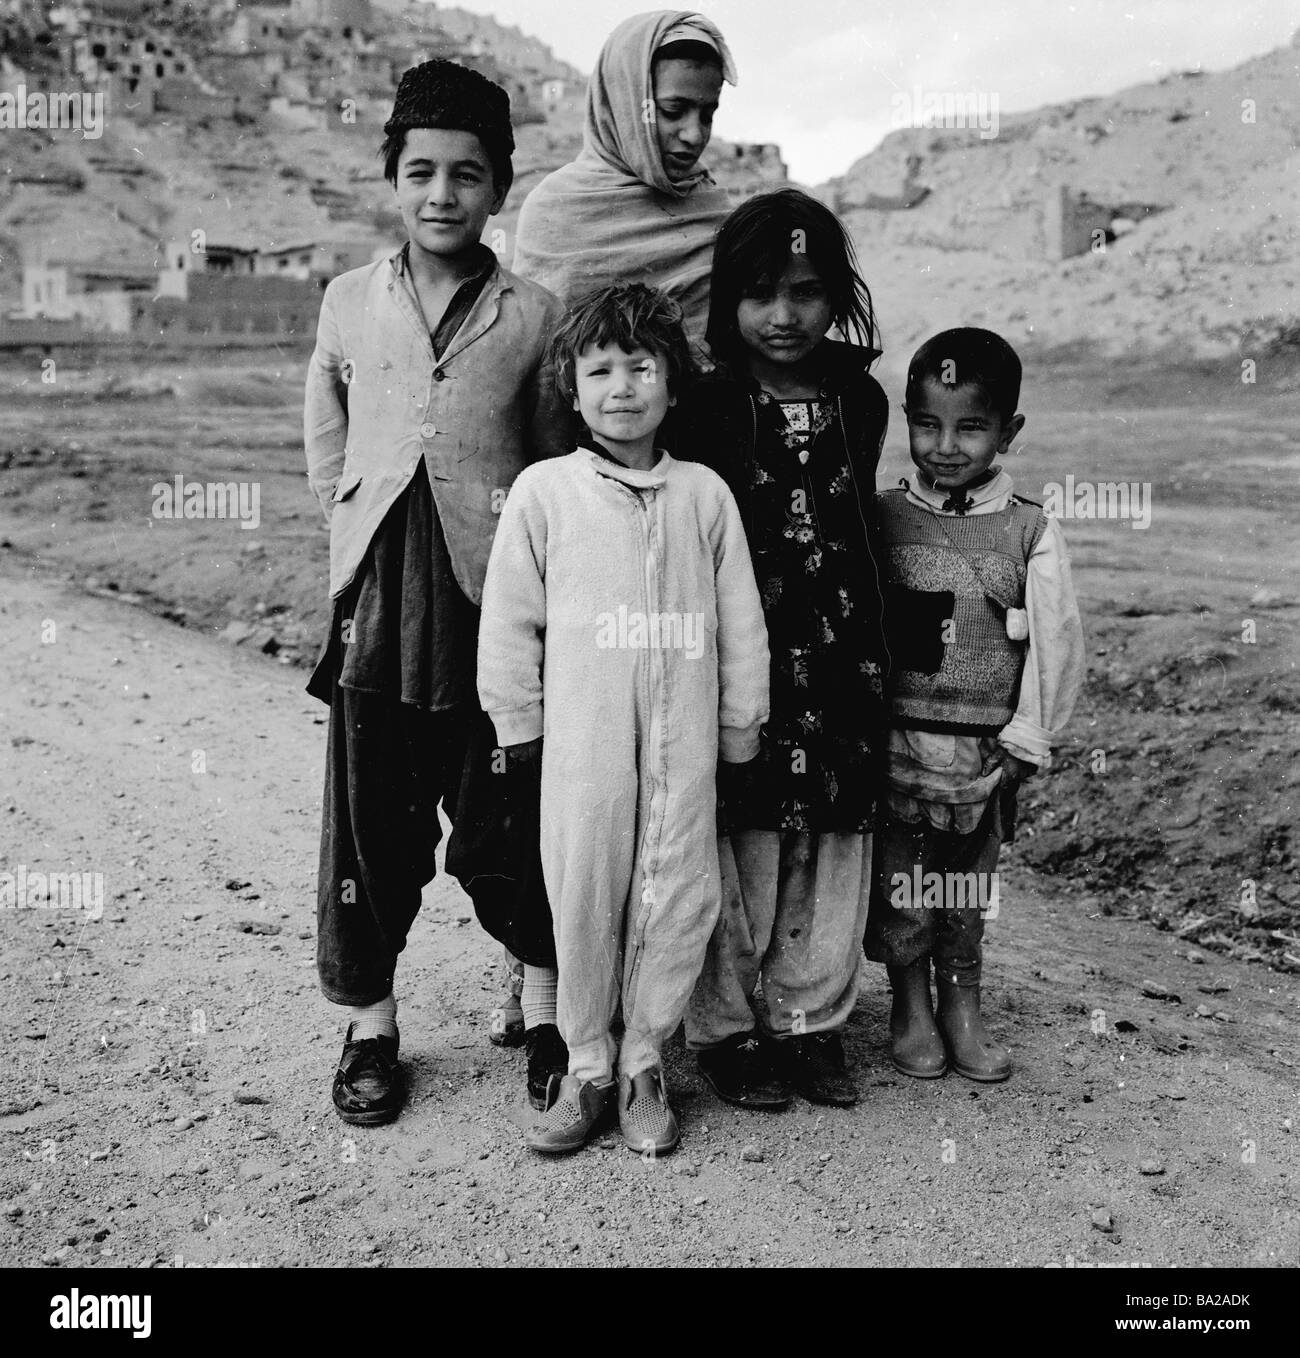 1950s, una foto di J Allan Cash di una madre con i suoi quattro figli, indossando abiti tradizionali afghani, su un sentiero collinare vicino a Kabul, Afghanistan. Foto Stock